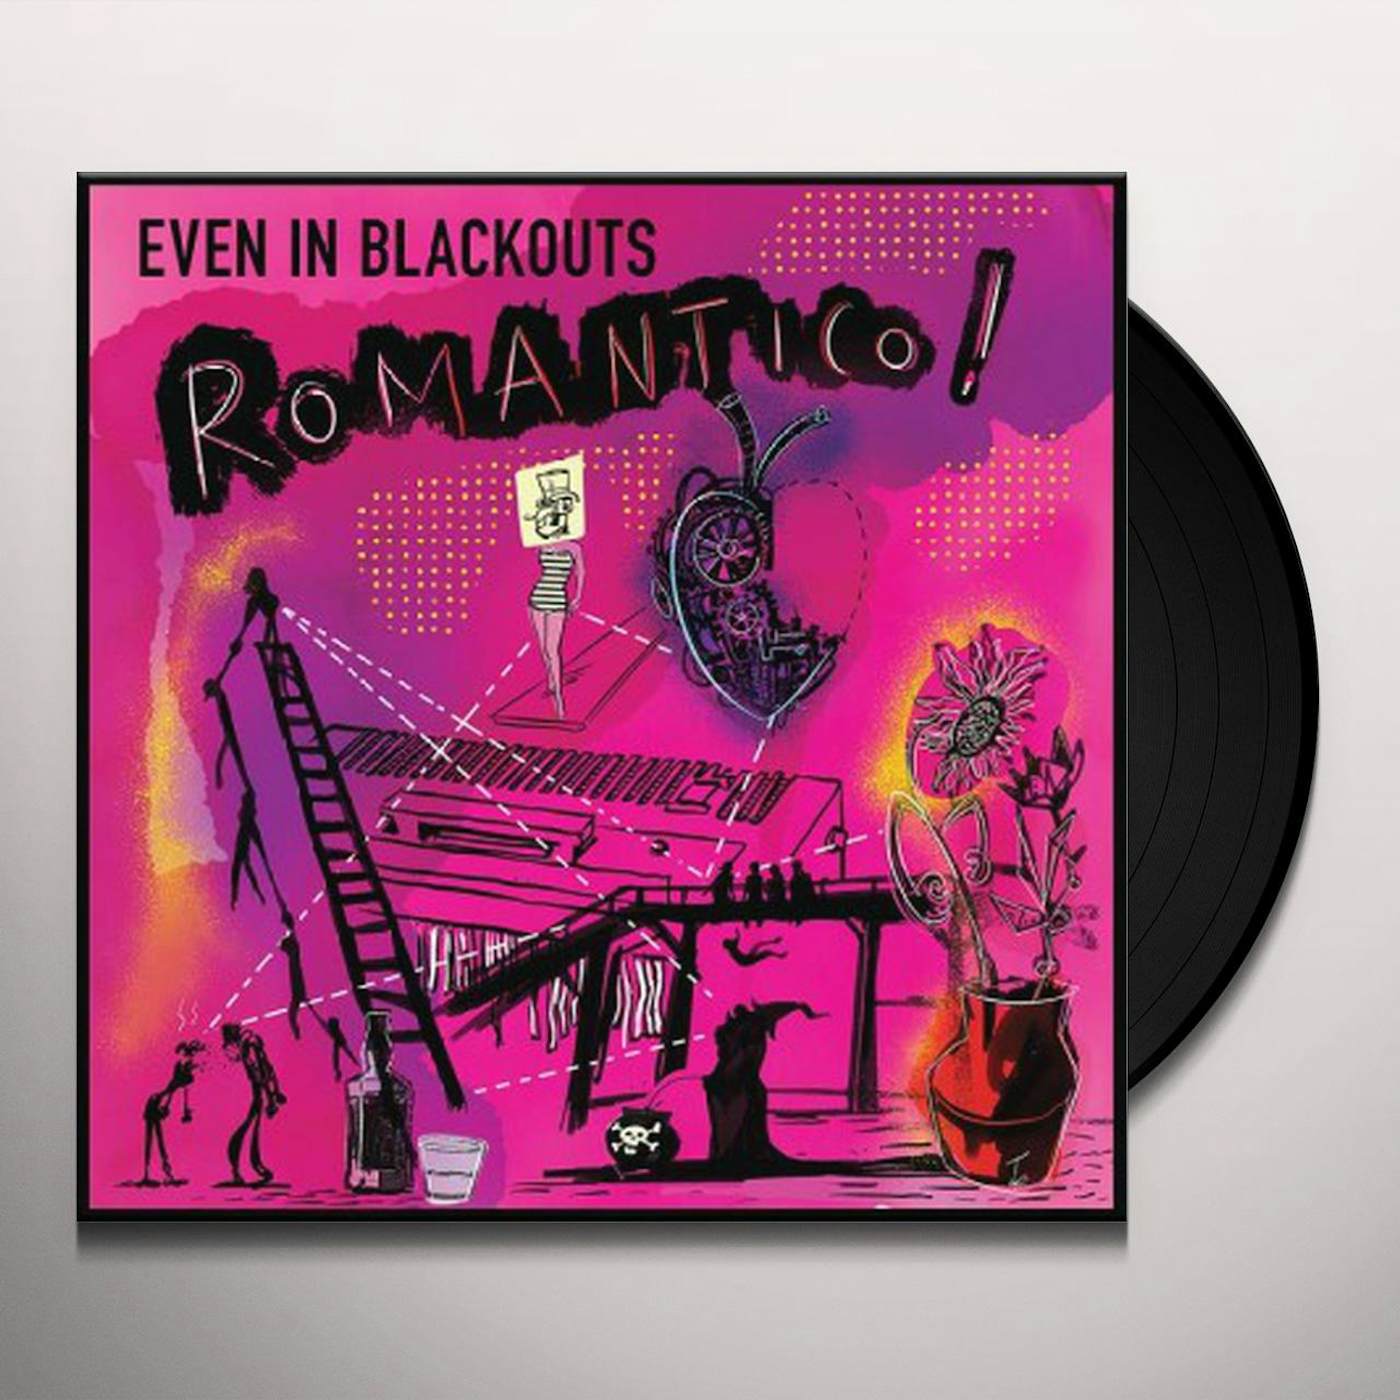 Even In Blackouts Romantico! Vinyl Record